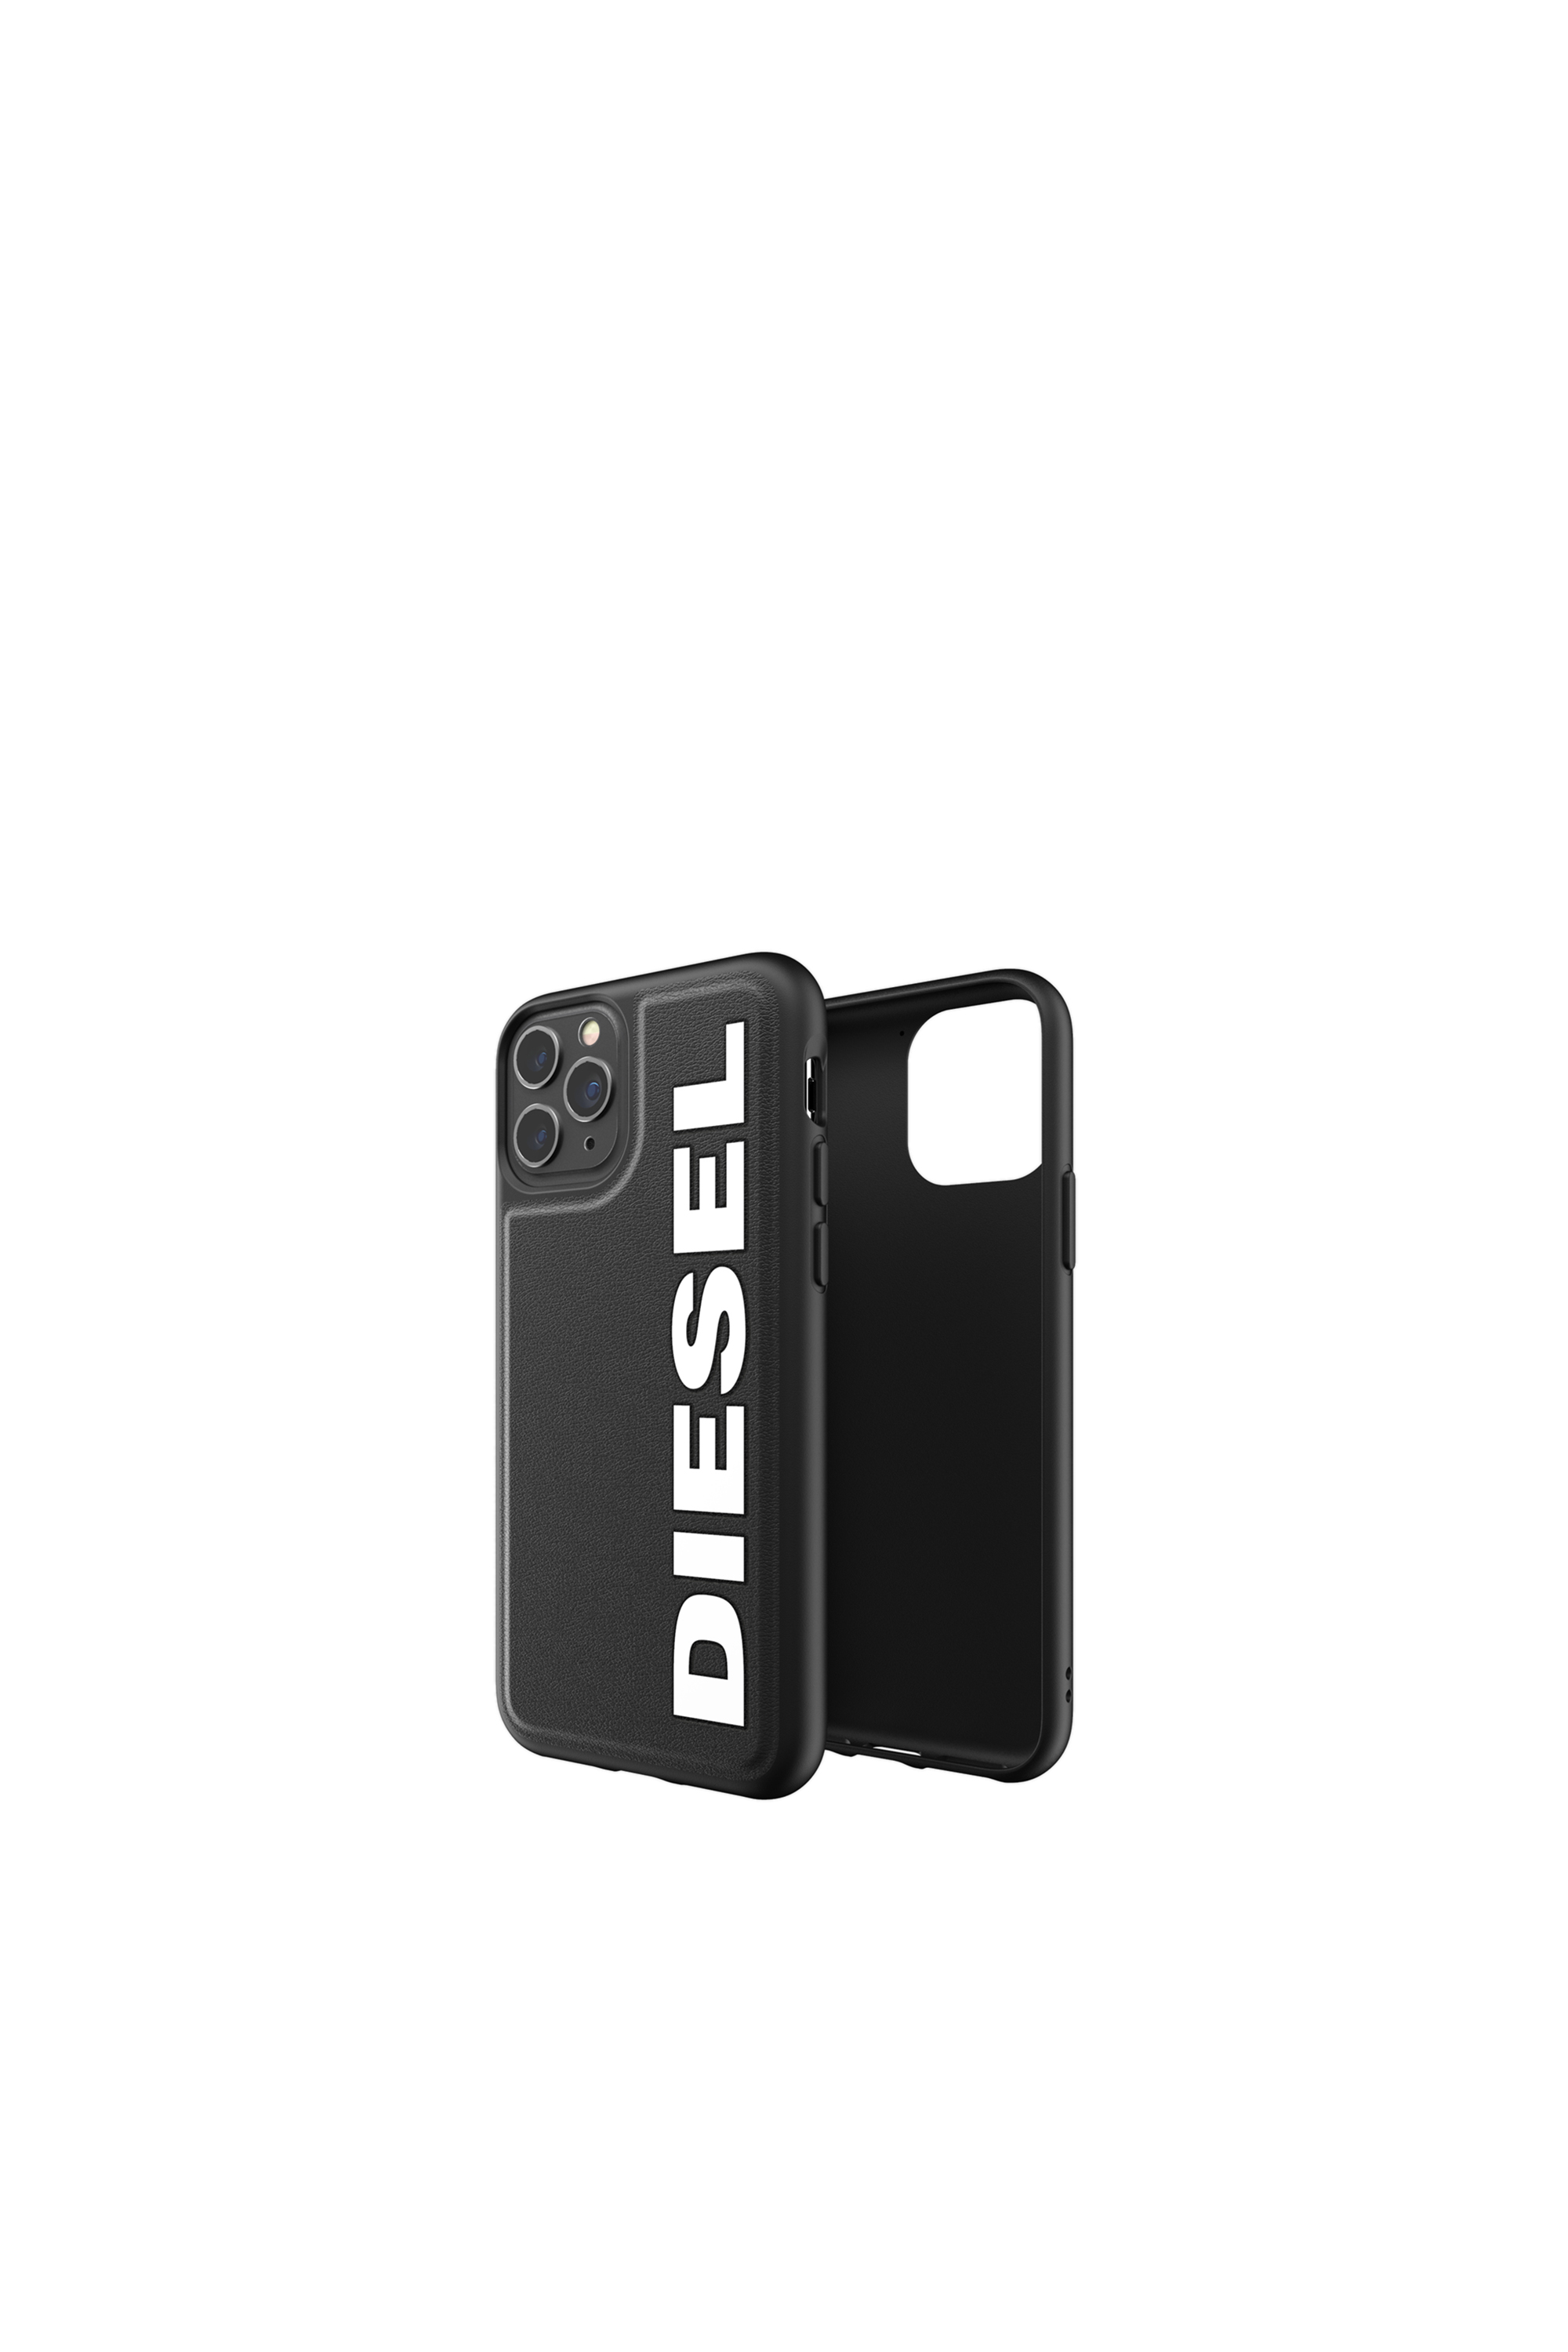 Diesel - 41982, Black - Image 1